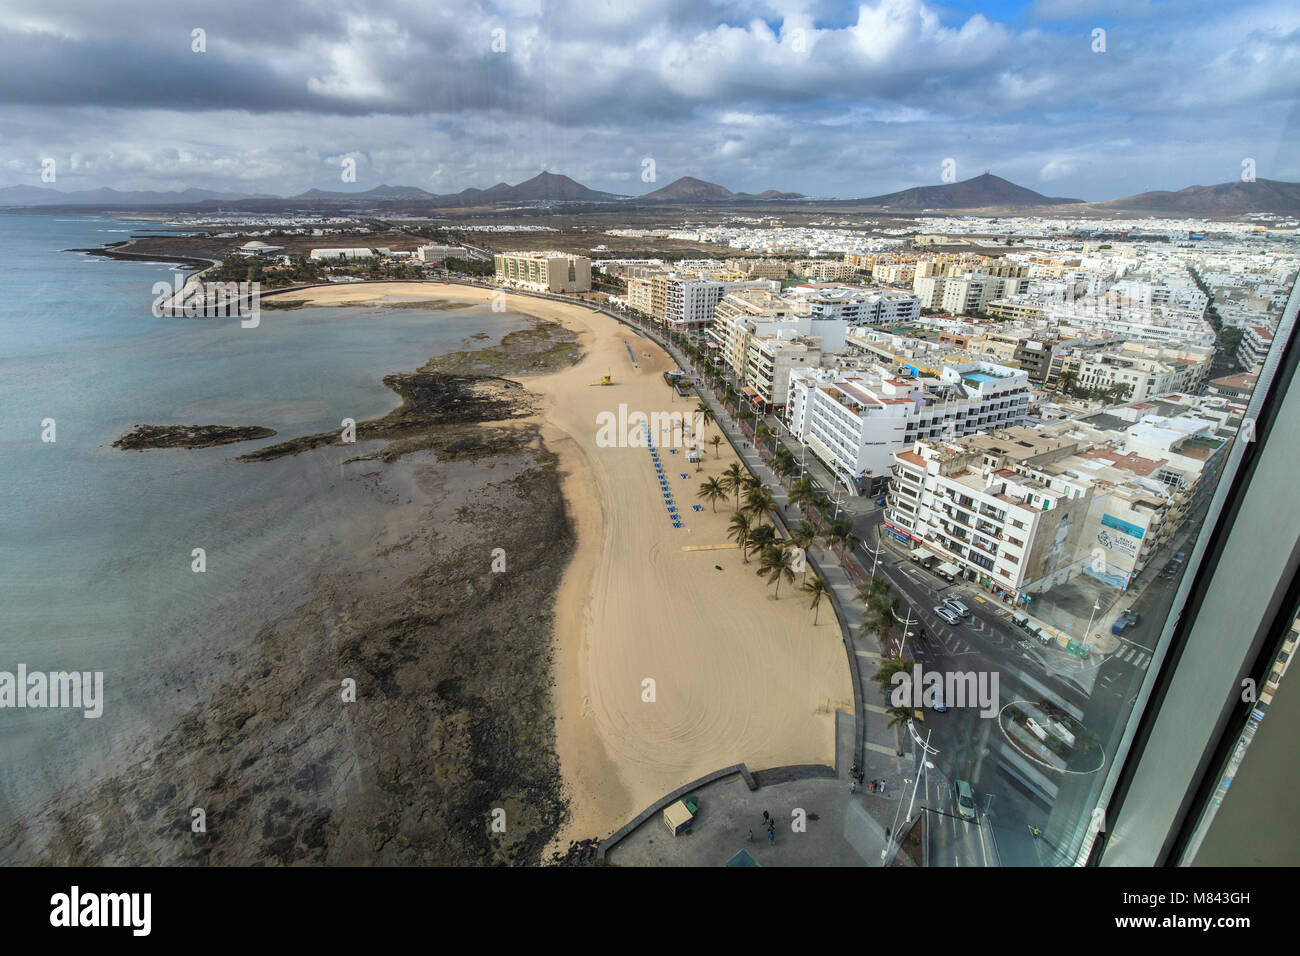 Vista desde el piso 17 del Gran Hotel, Arrecife Lanzarote Foto de stock